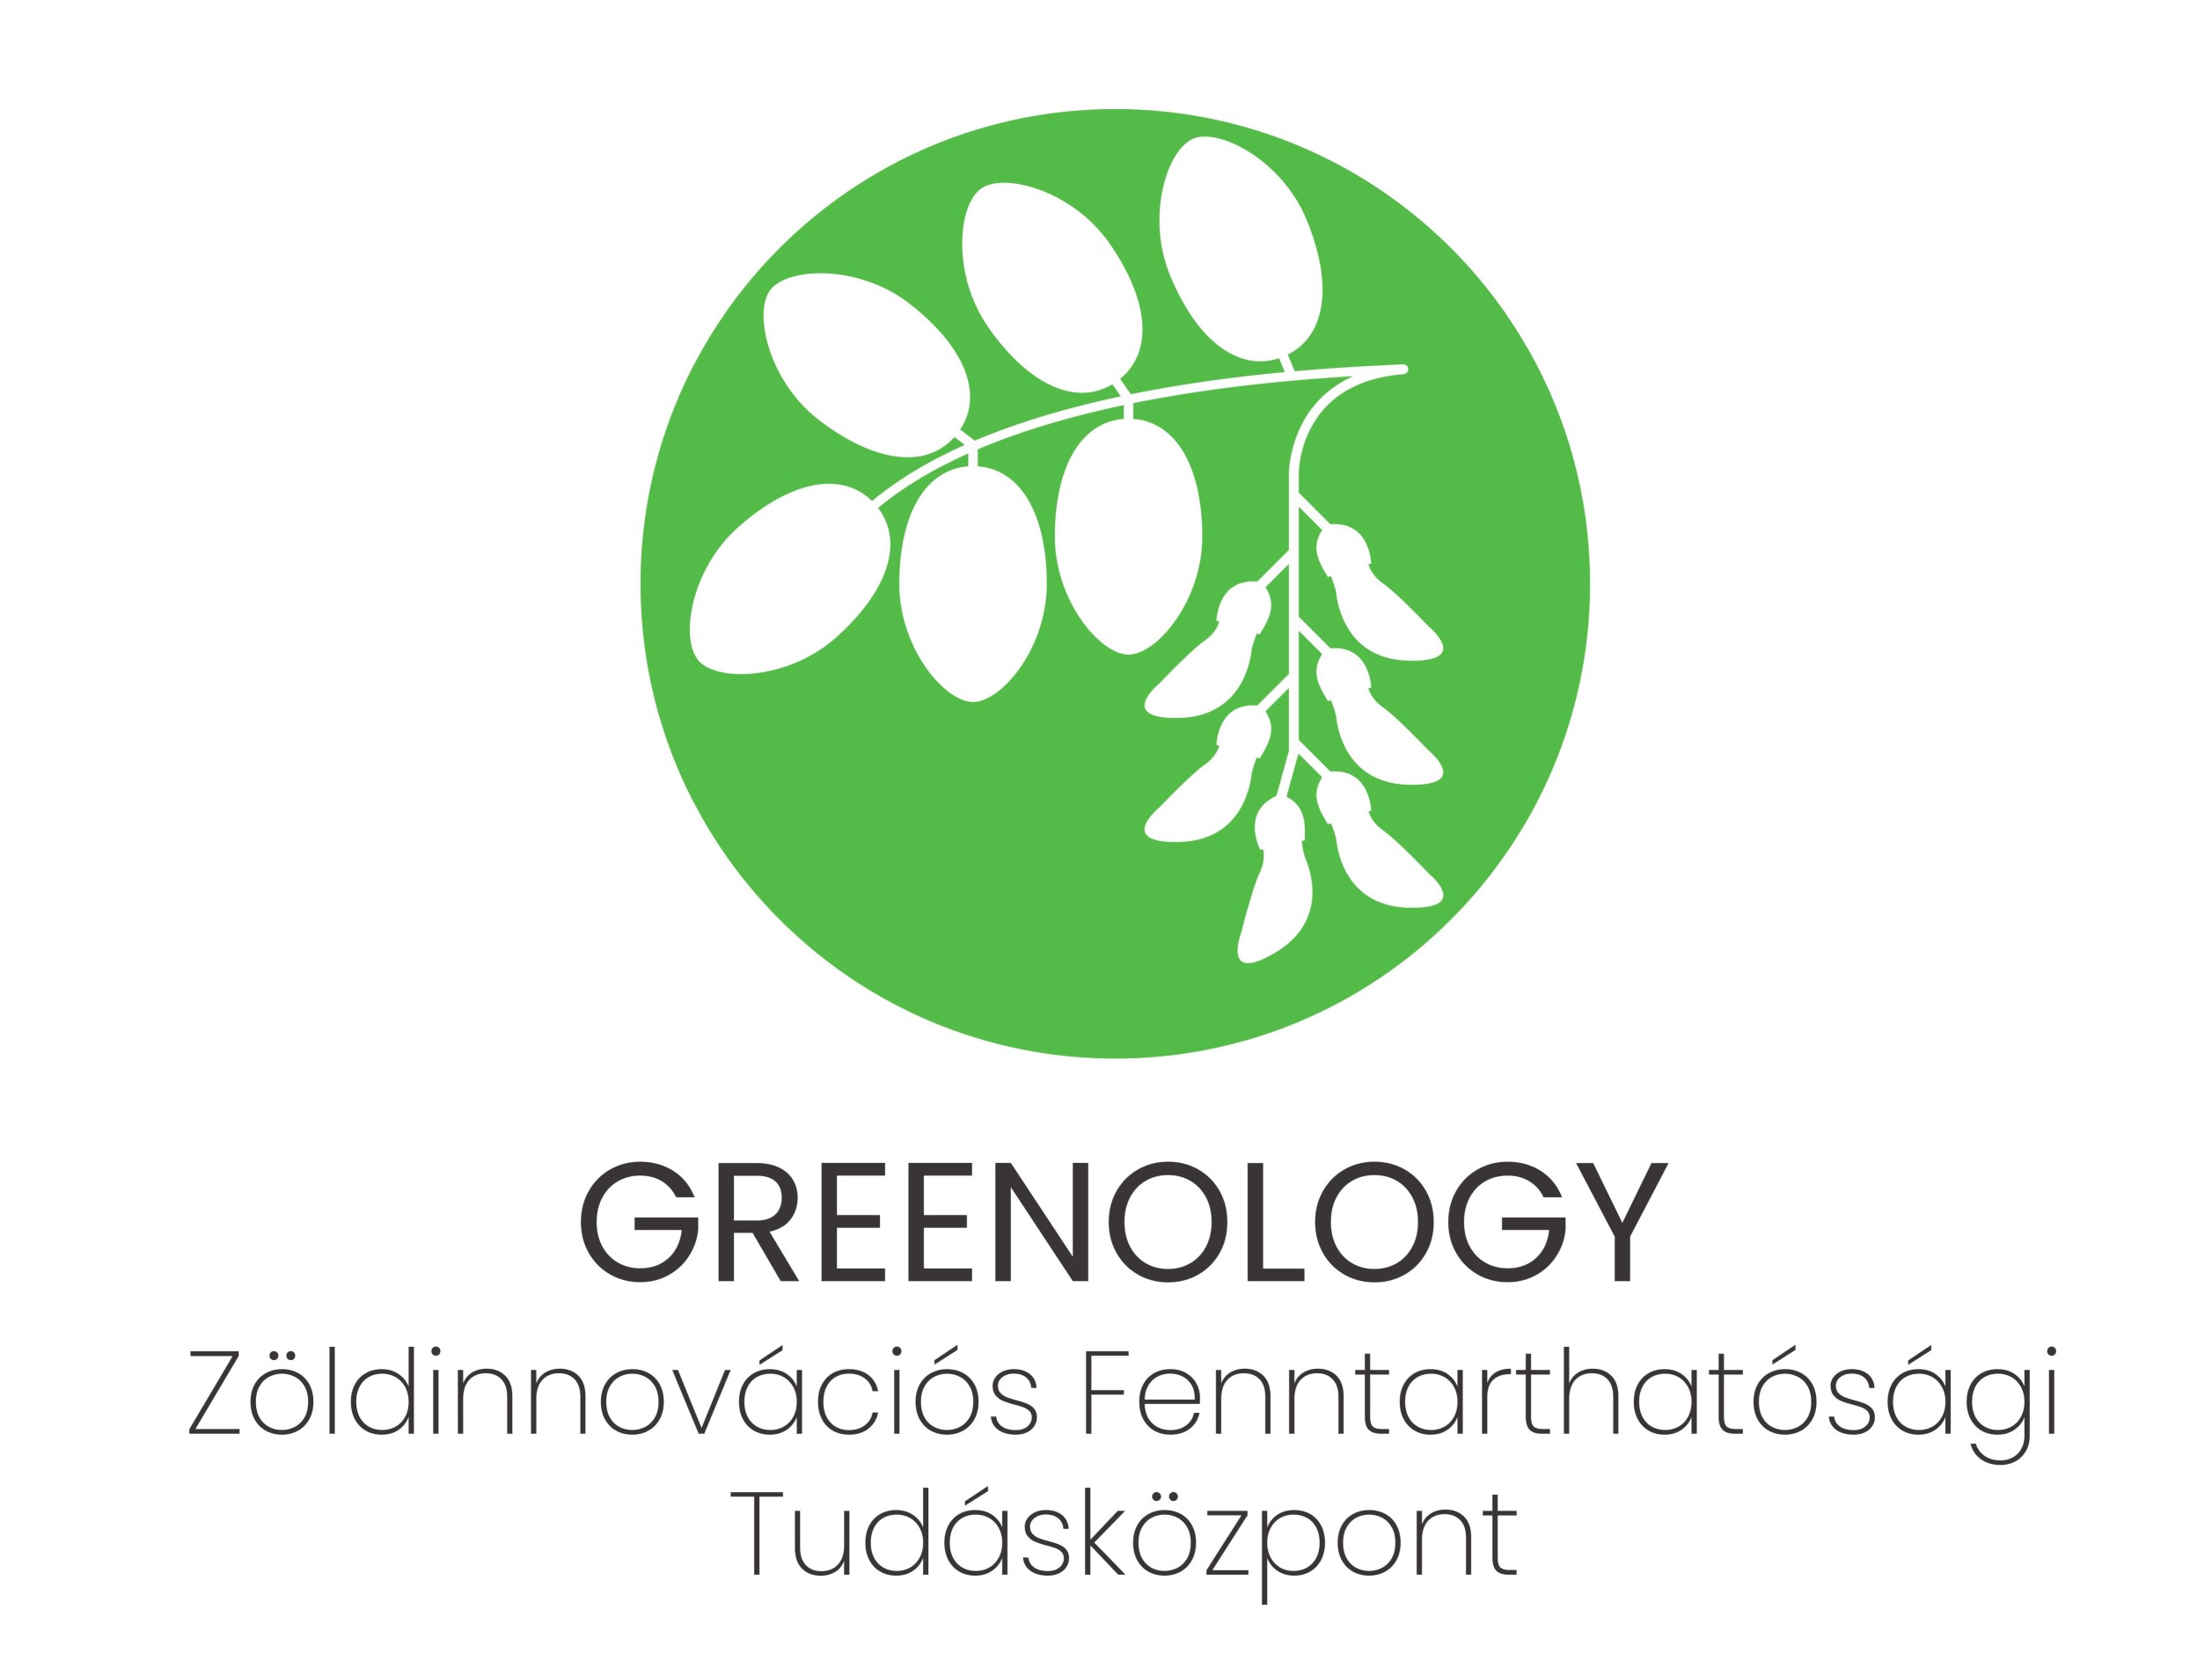 Greenology Zöldinnovációs Fenntarthatósági Tudásközpont 